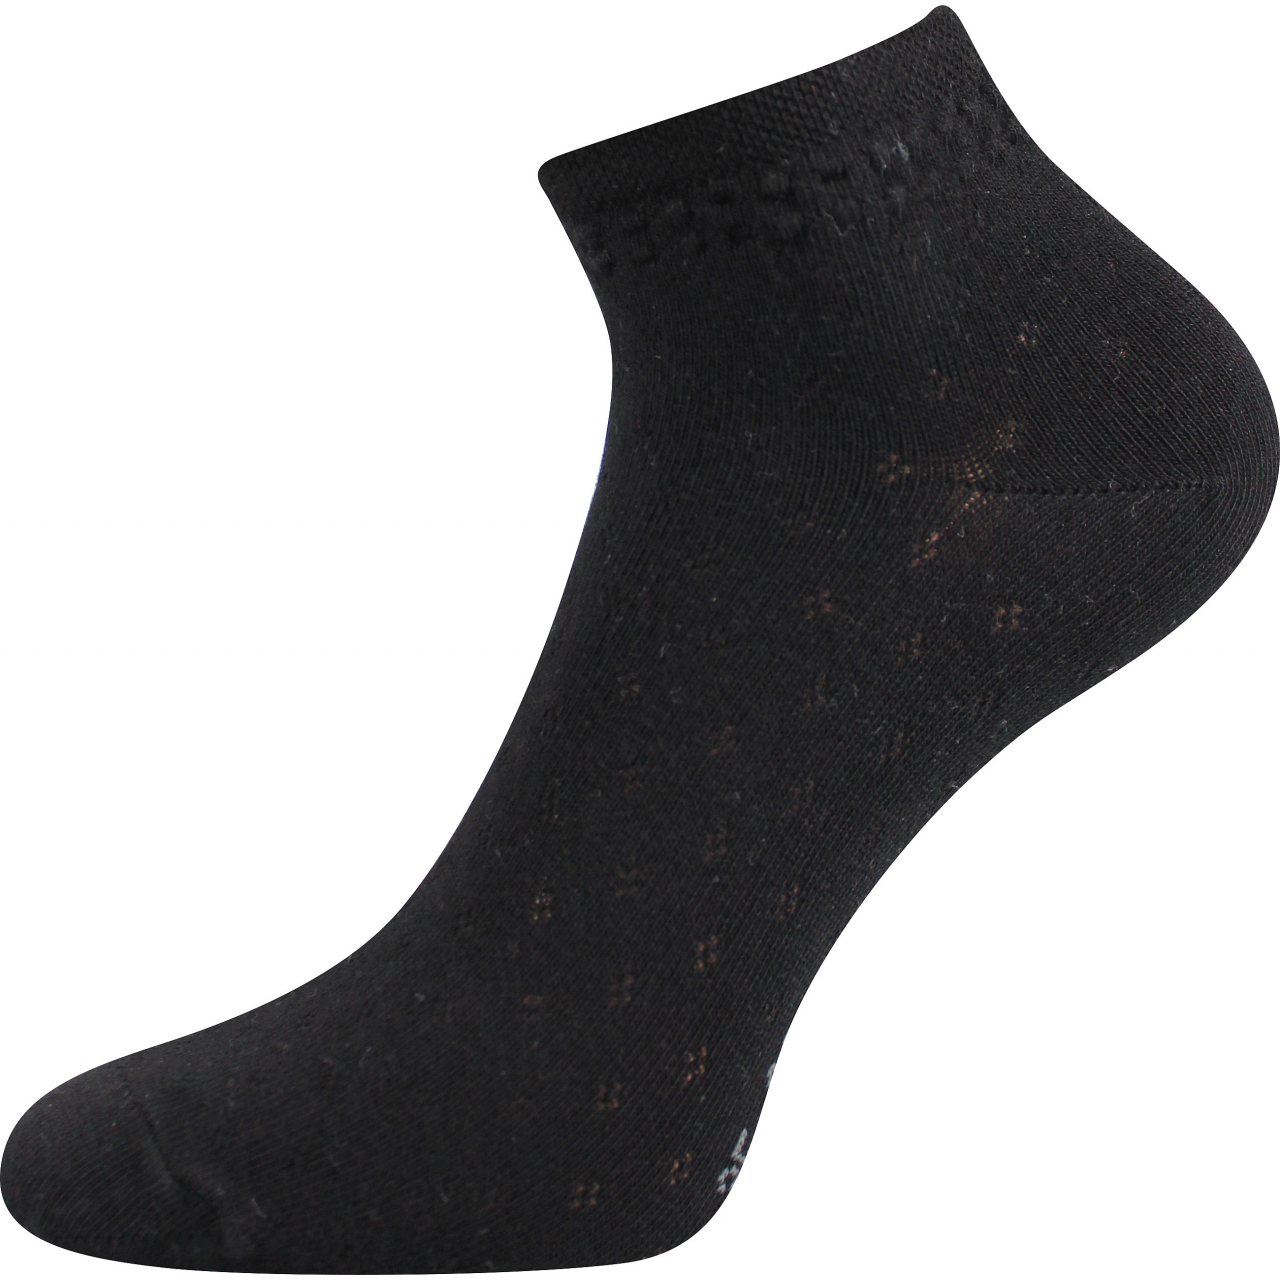 Ponožky dámské klasické Voxx Susi - černé, 39-42